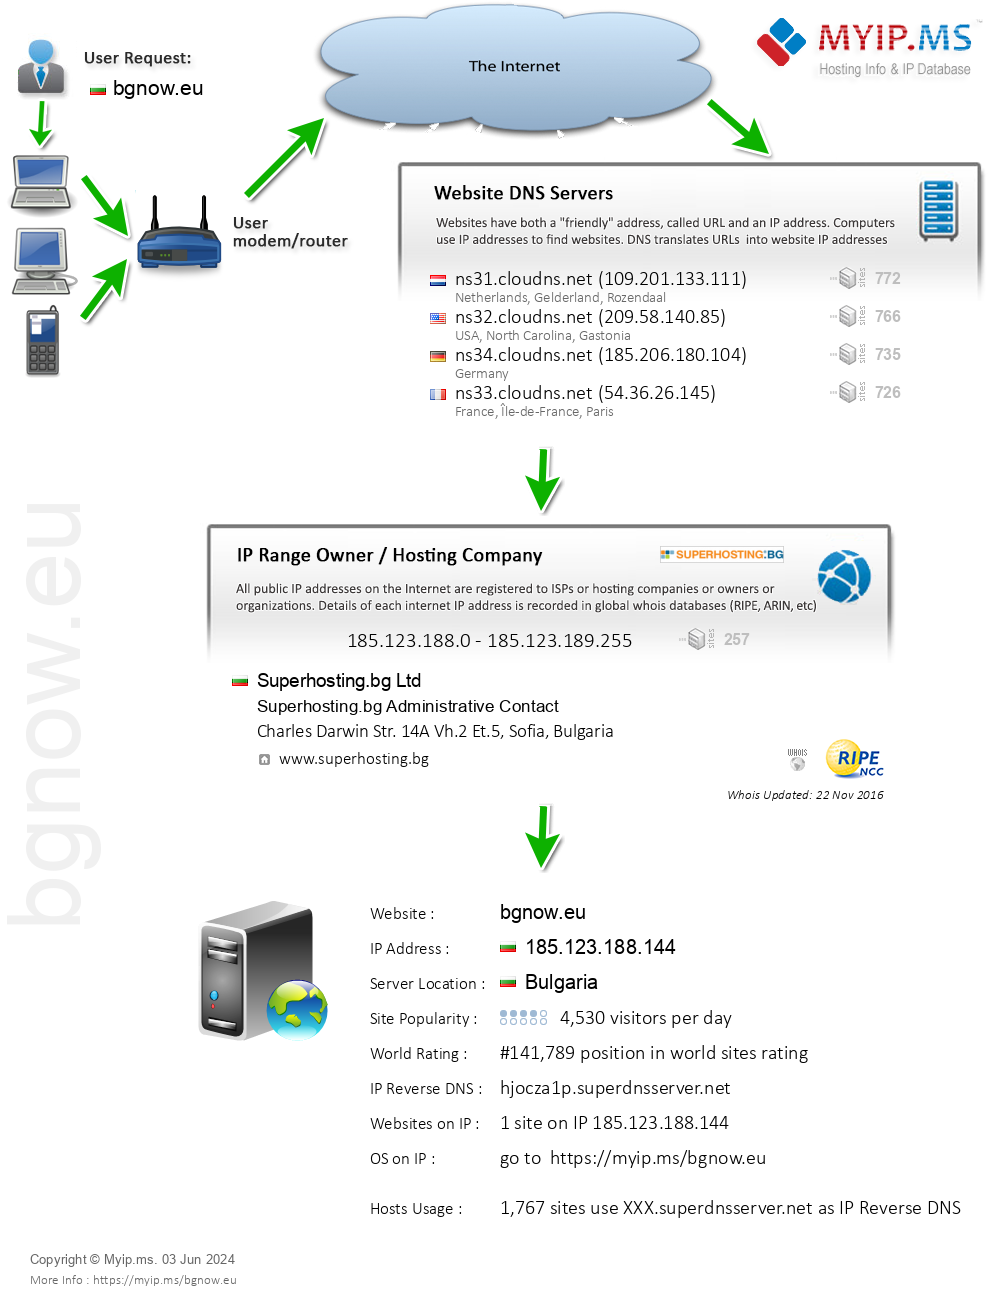 Bgnow.eu - Website Hosting Visual IP Diagram